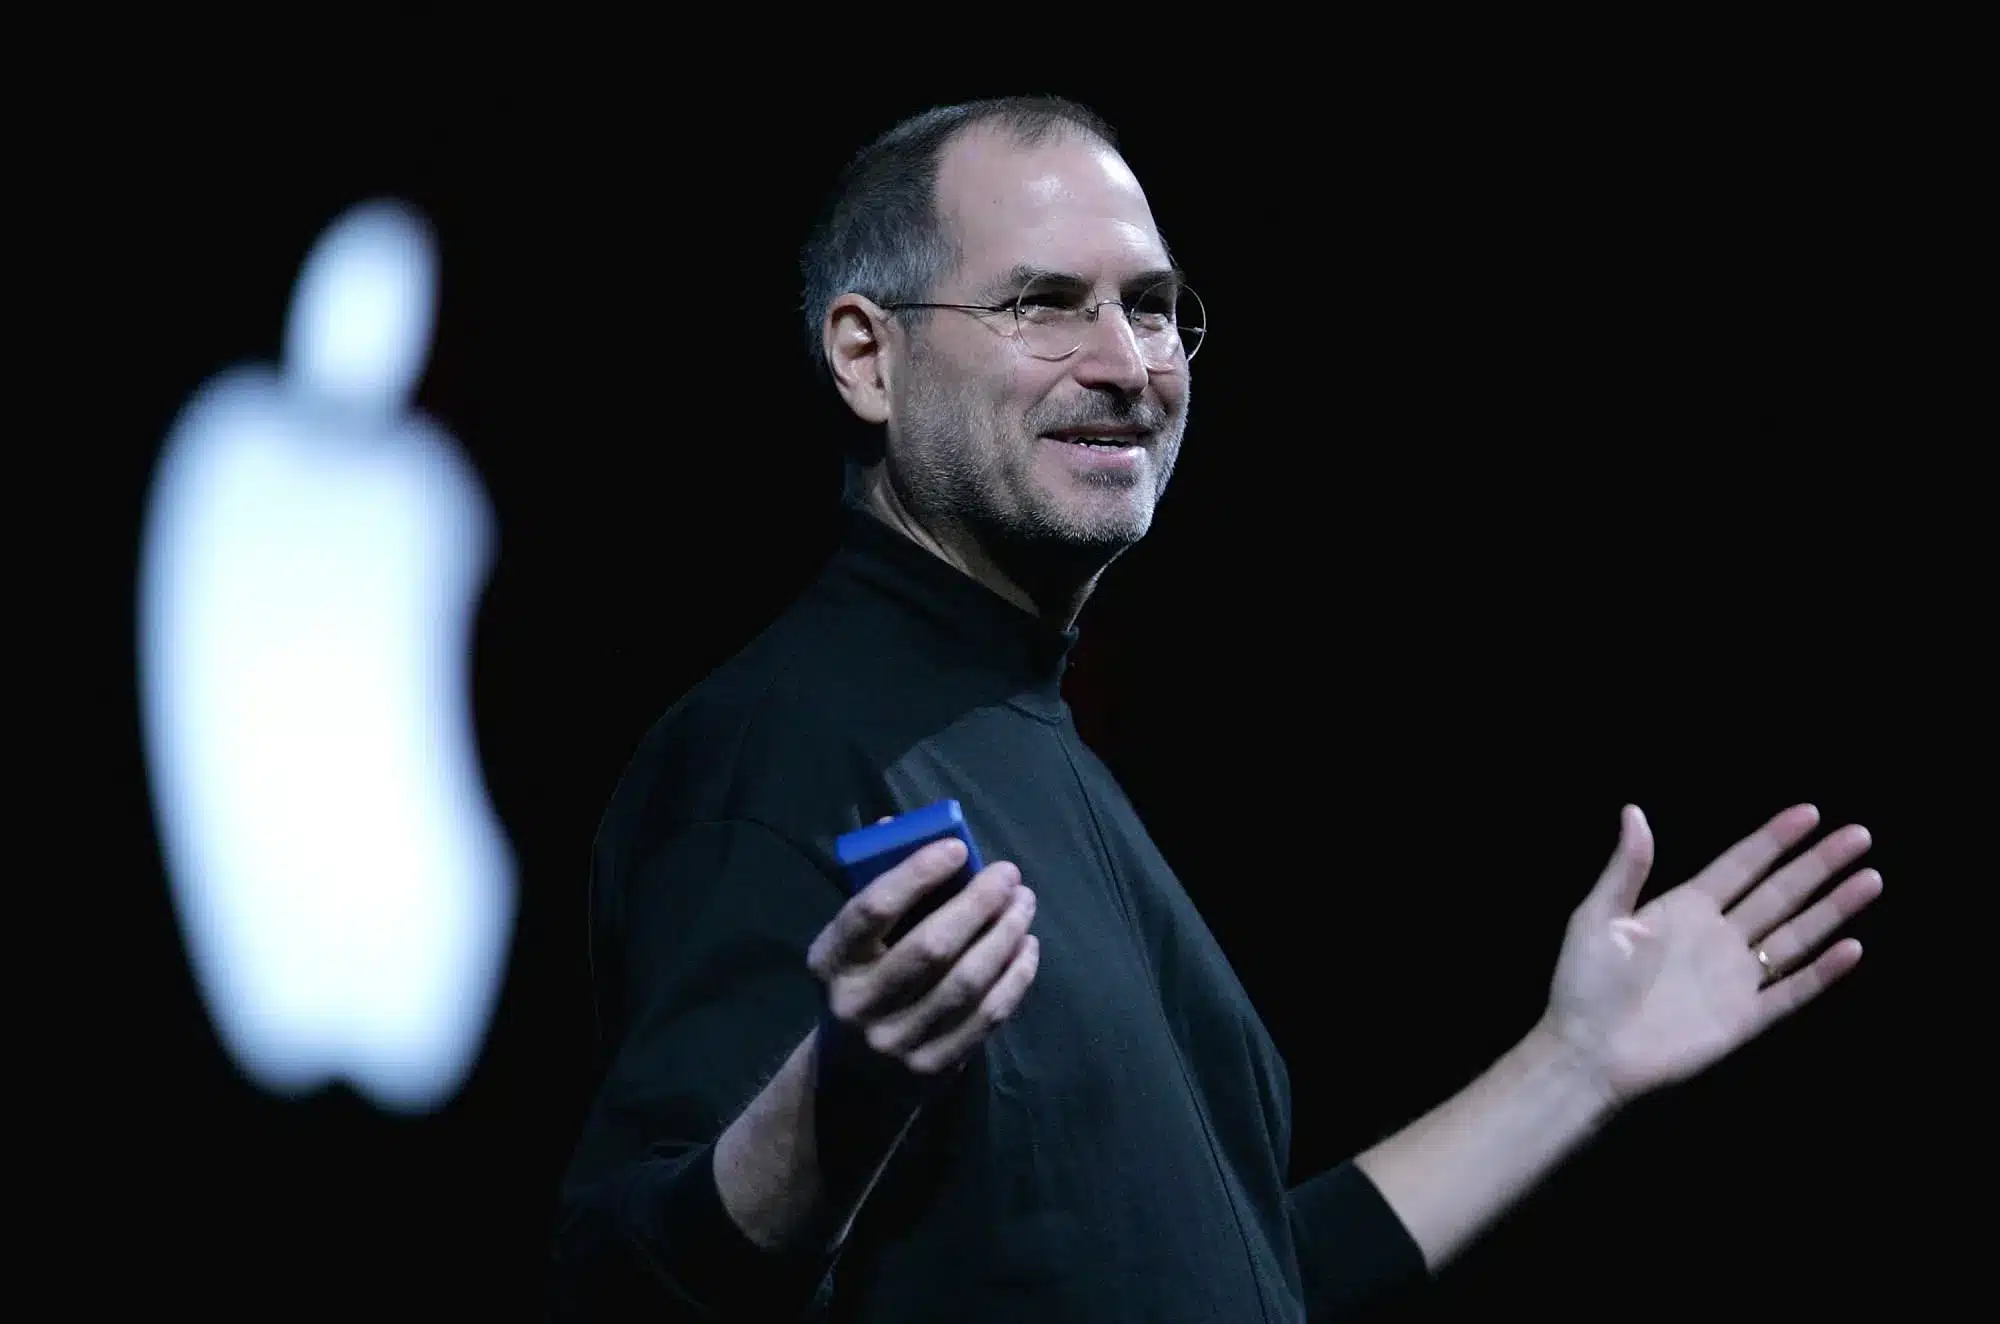 Công nghệ mang tính nhân bản thành tựu đáng ghi nhận nhất của Steve Jobs   bởi Pham Khanh Ly  Brands Vietnam